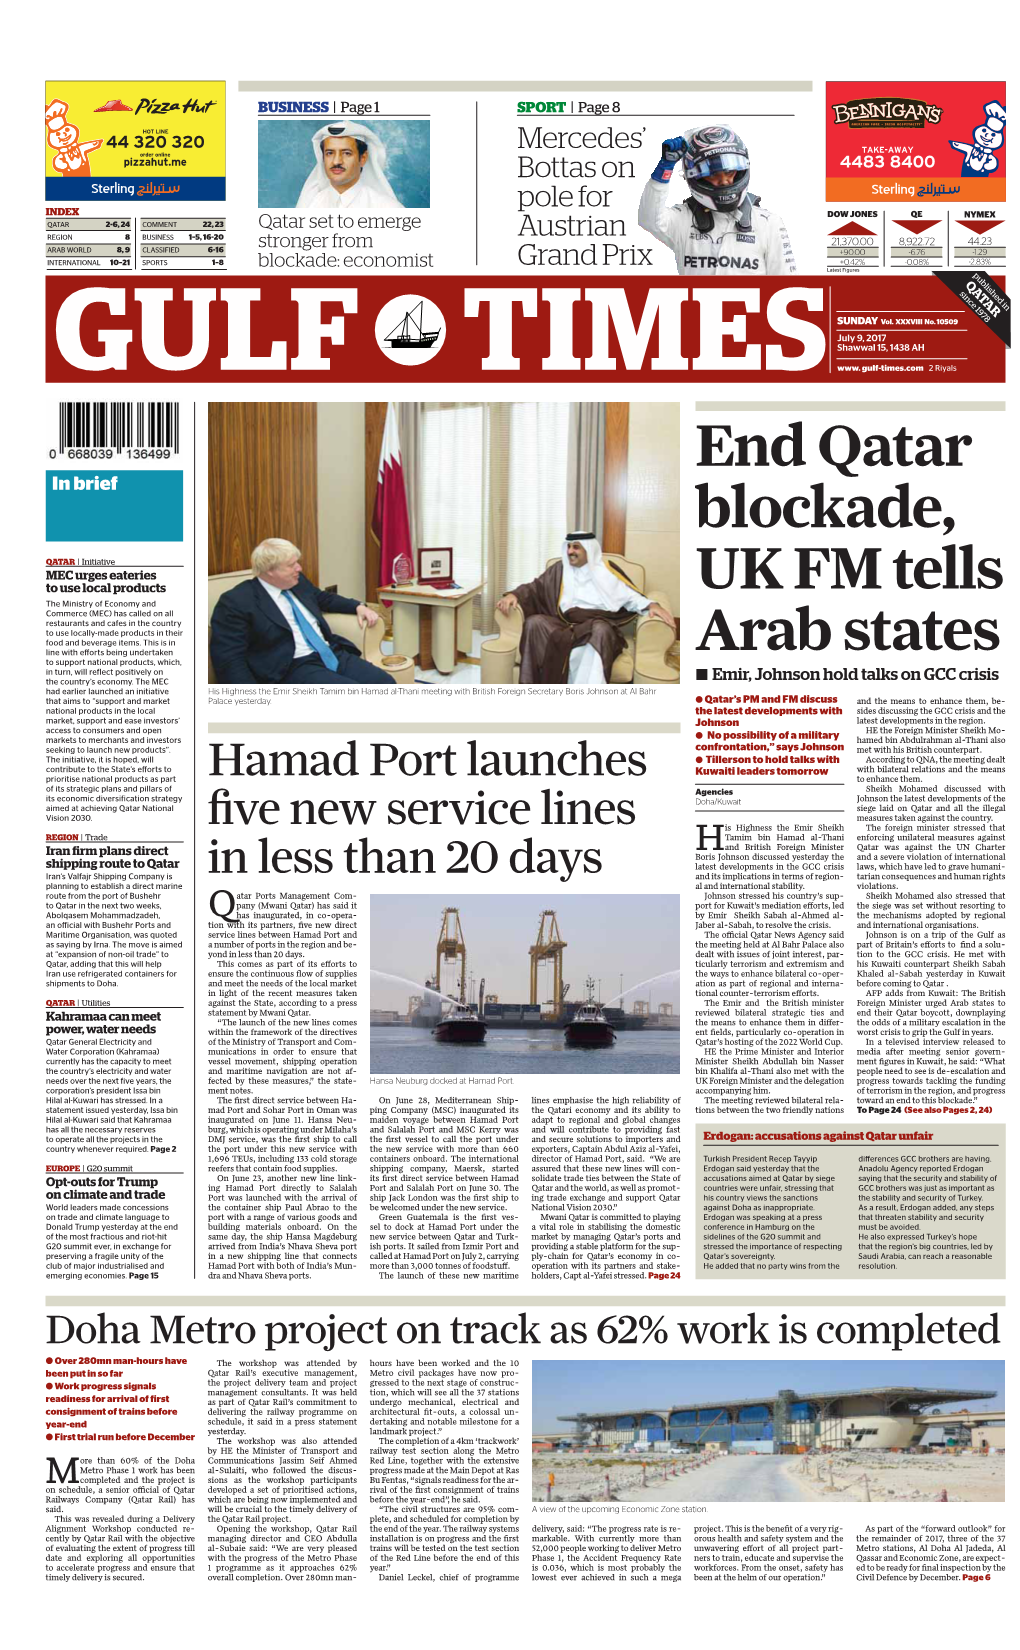 End Qatar Blockade, UK FM Tells Arab States